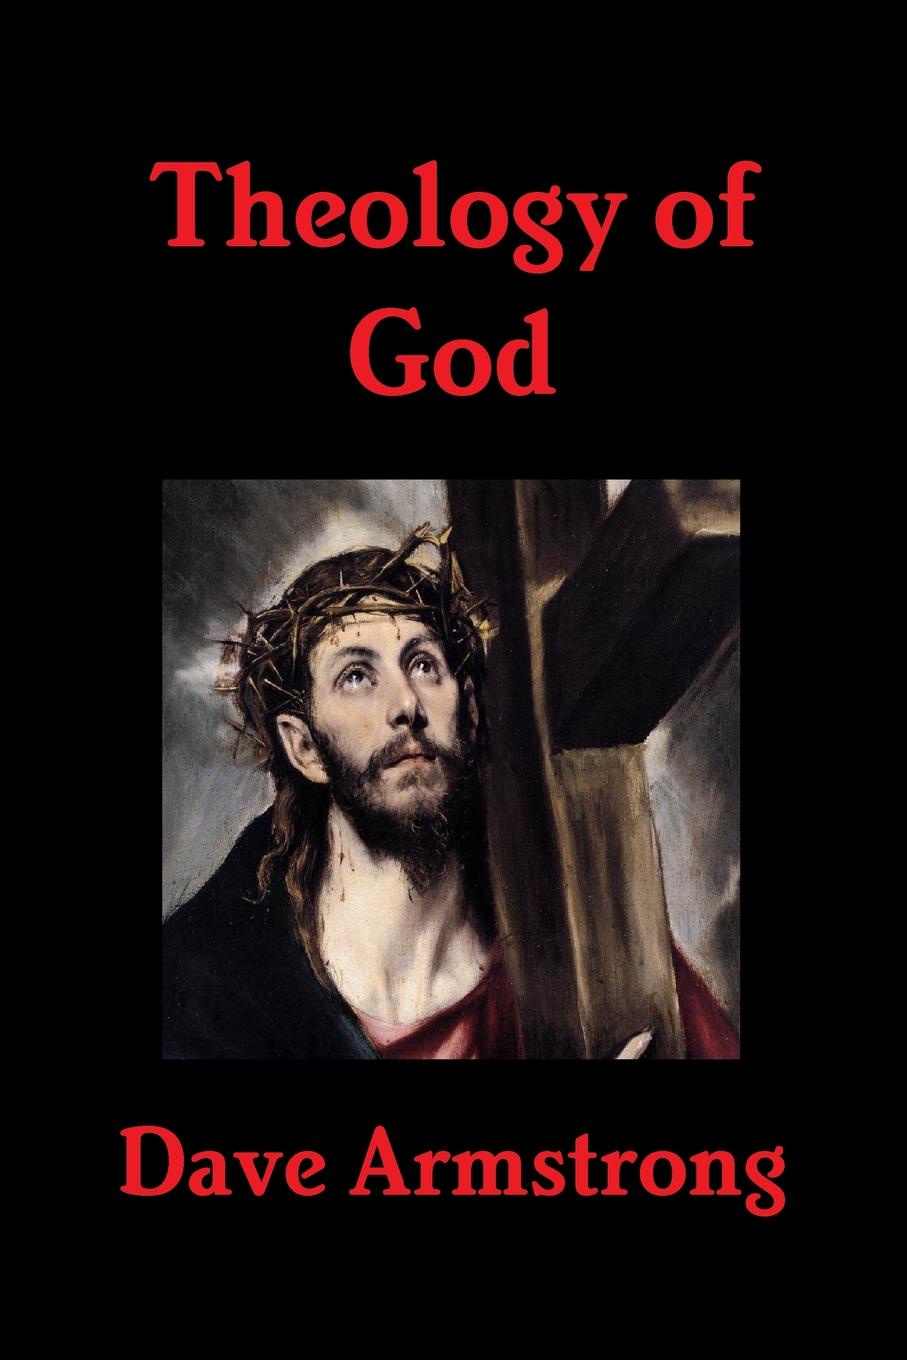 Theology of God